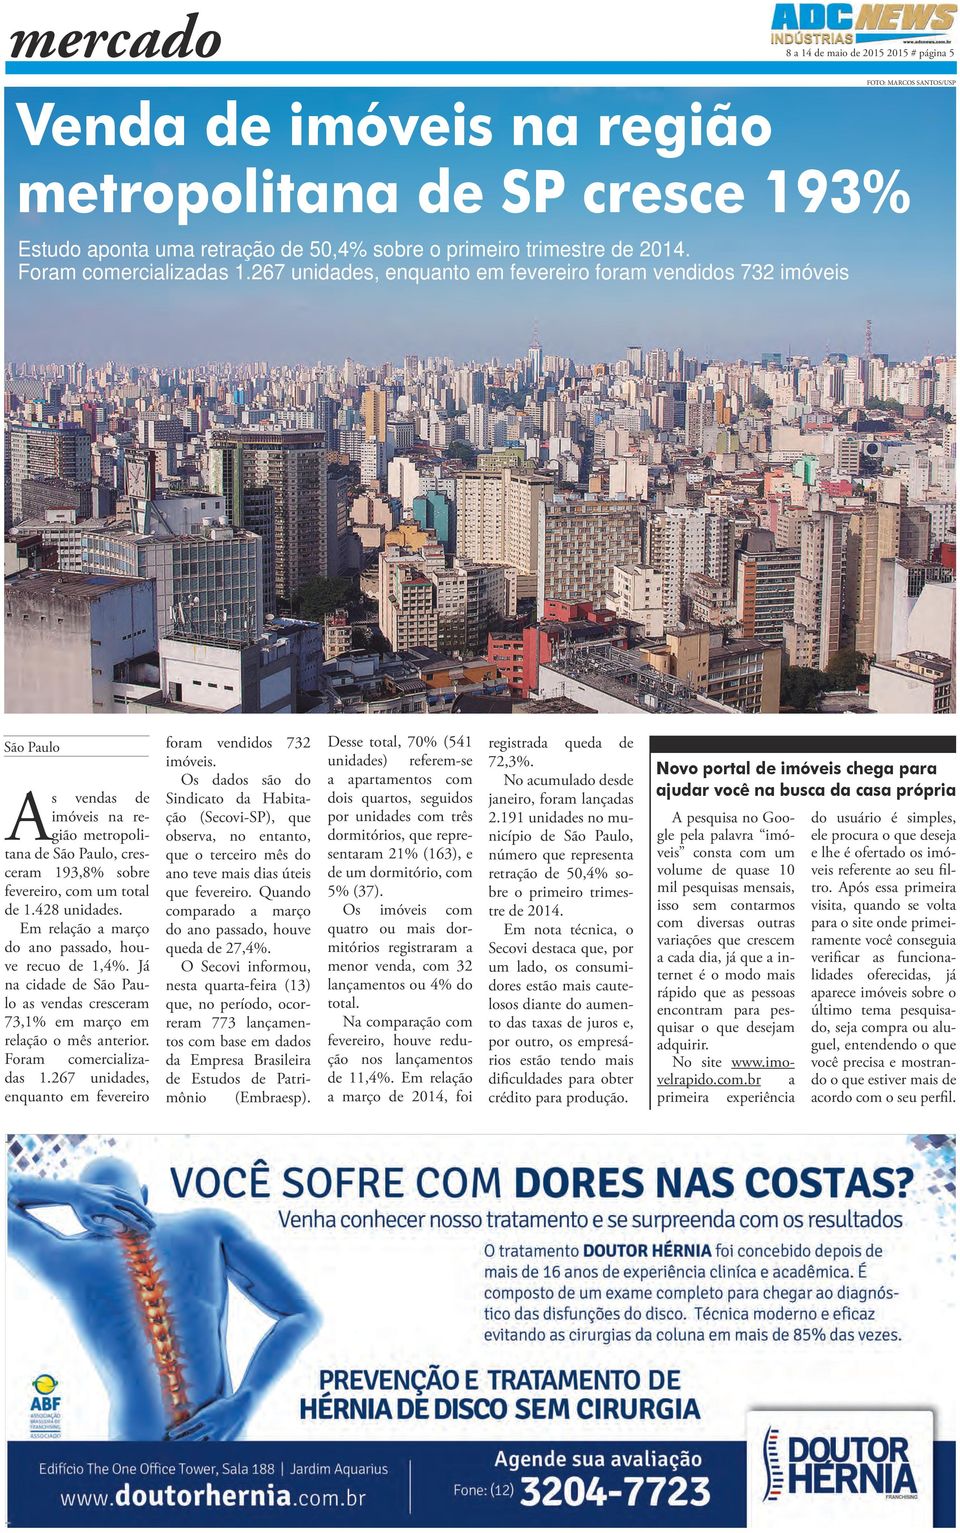 267 unidades, enquanto em fevereiro foram vendidos 732 imóveis São Paulo As vendas de imóveis na região metropolitana de São Paulo, cresceram 193,8% sobre fevereiro, com um total de 1.428 unidades.